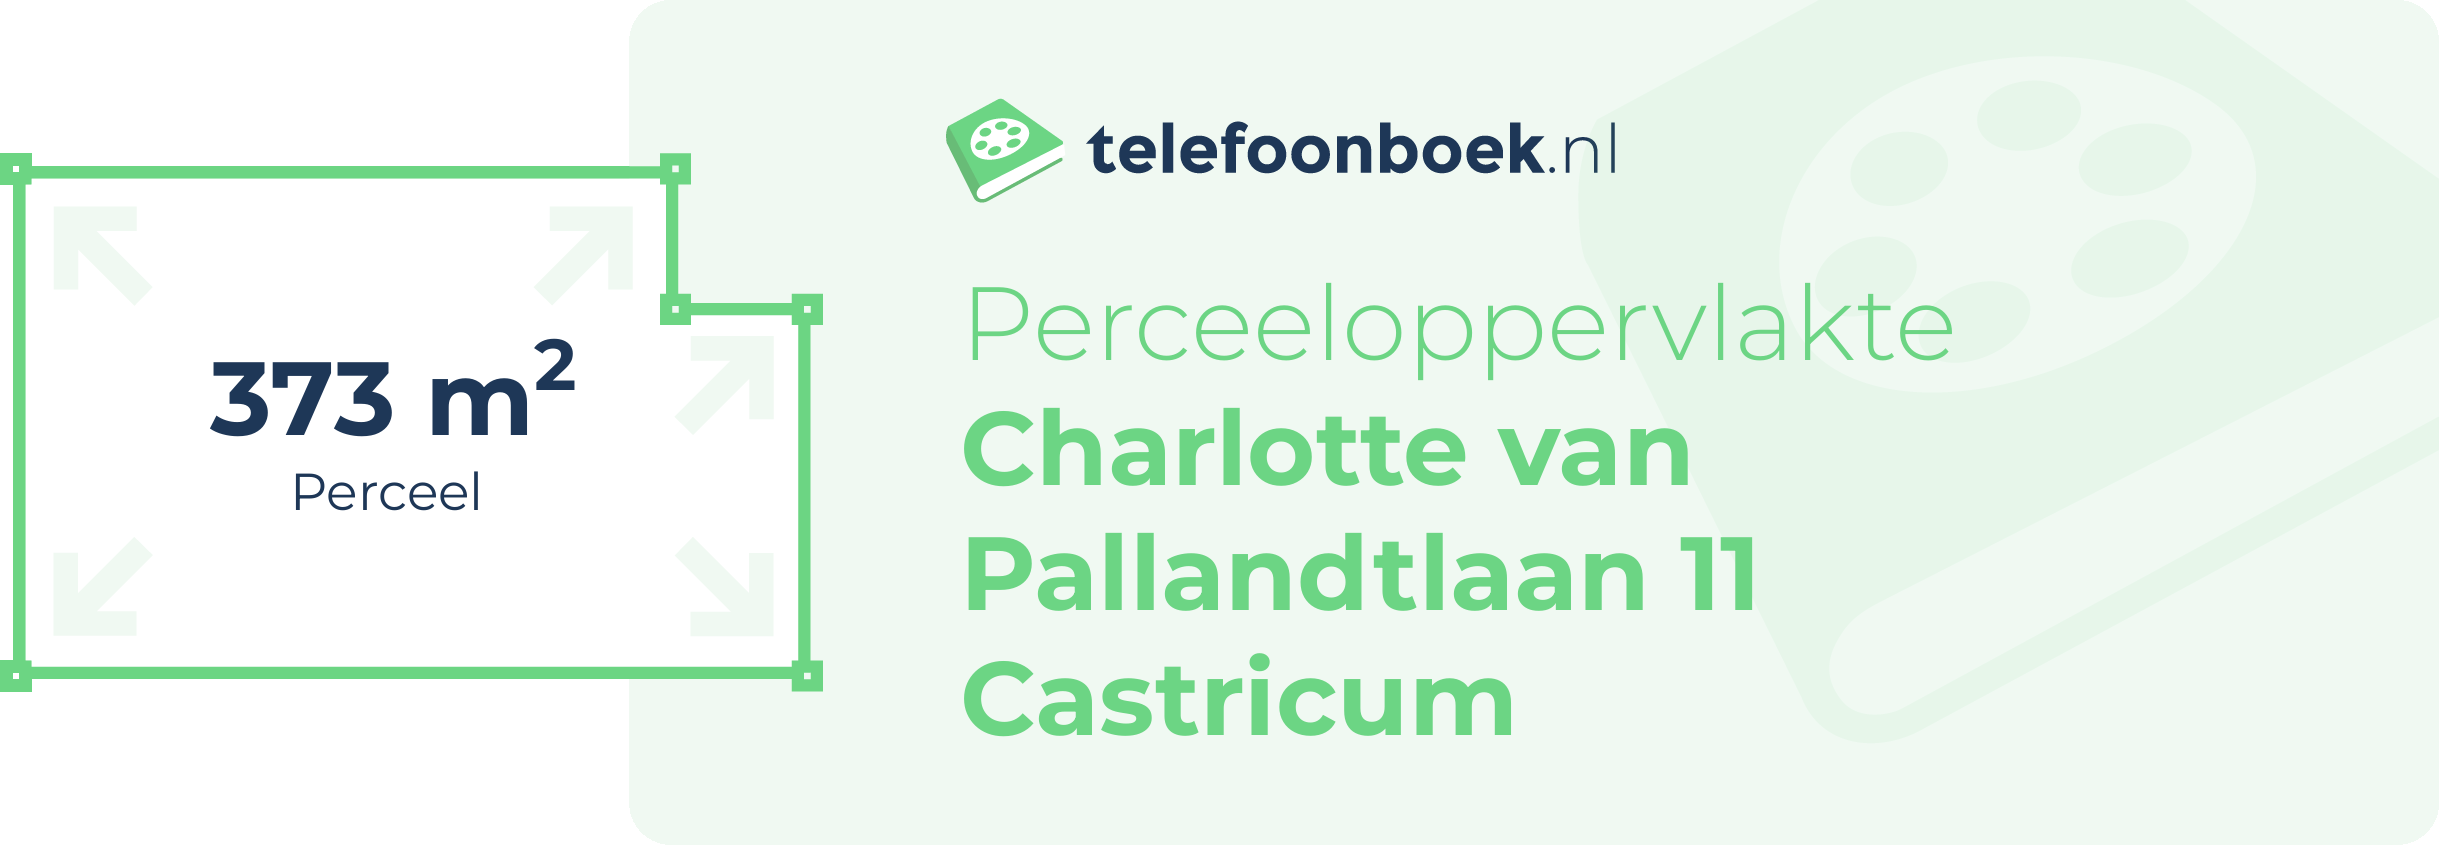 Perceeloppervlakte Charlotte Van Pallandtlaan 11 Castricum